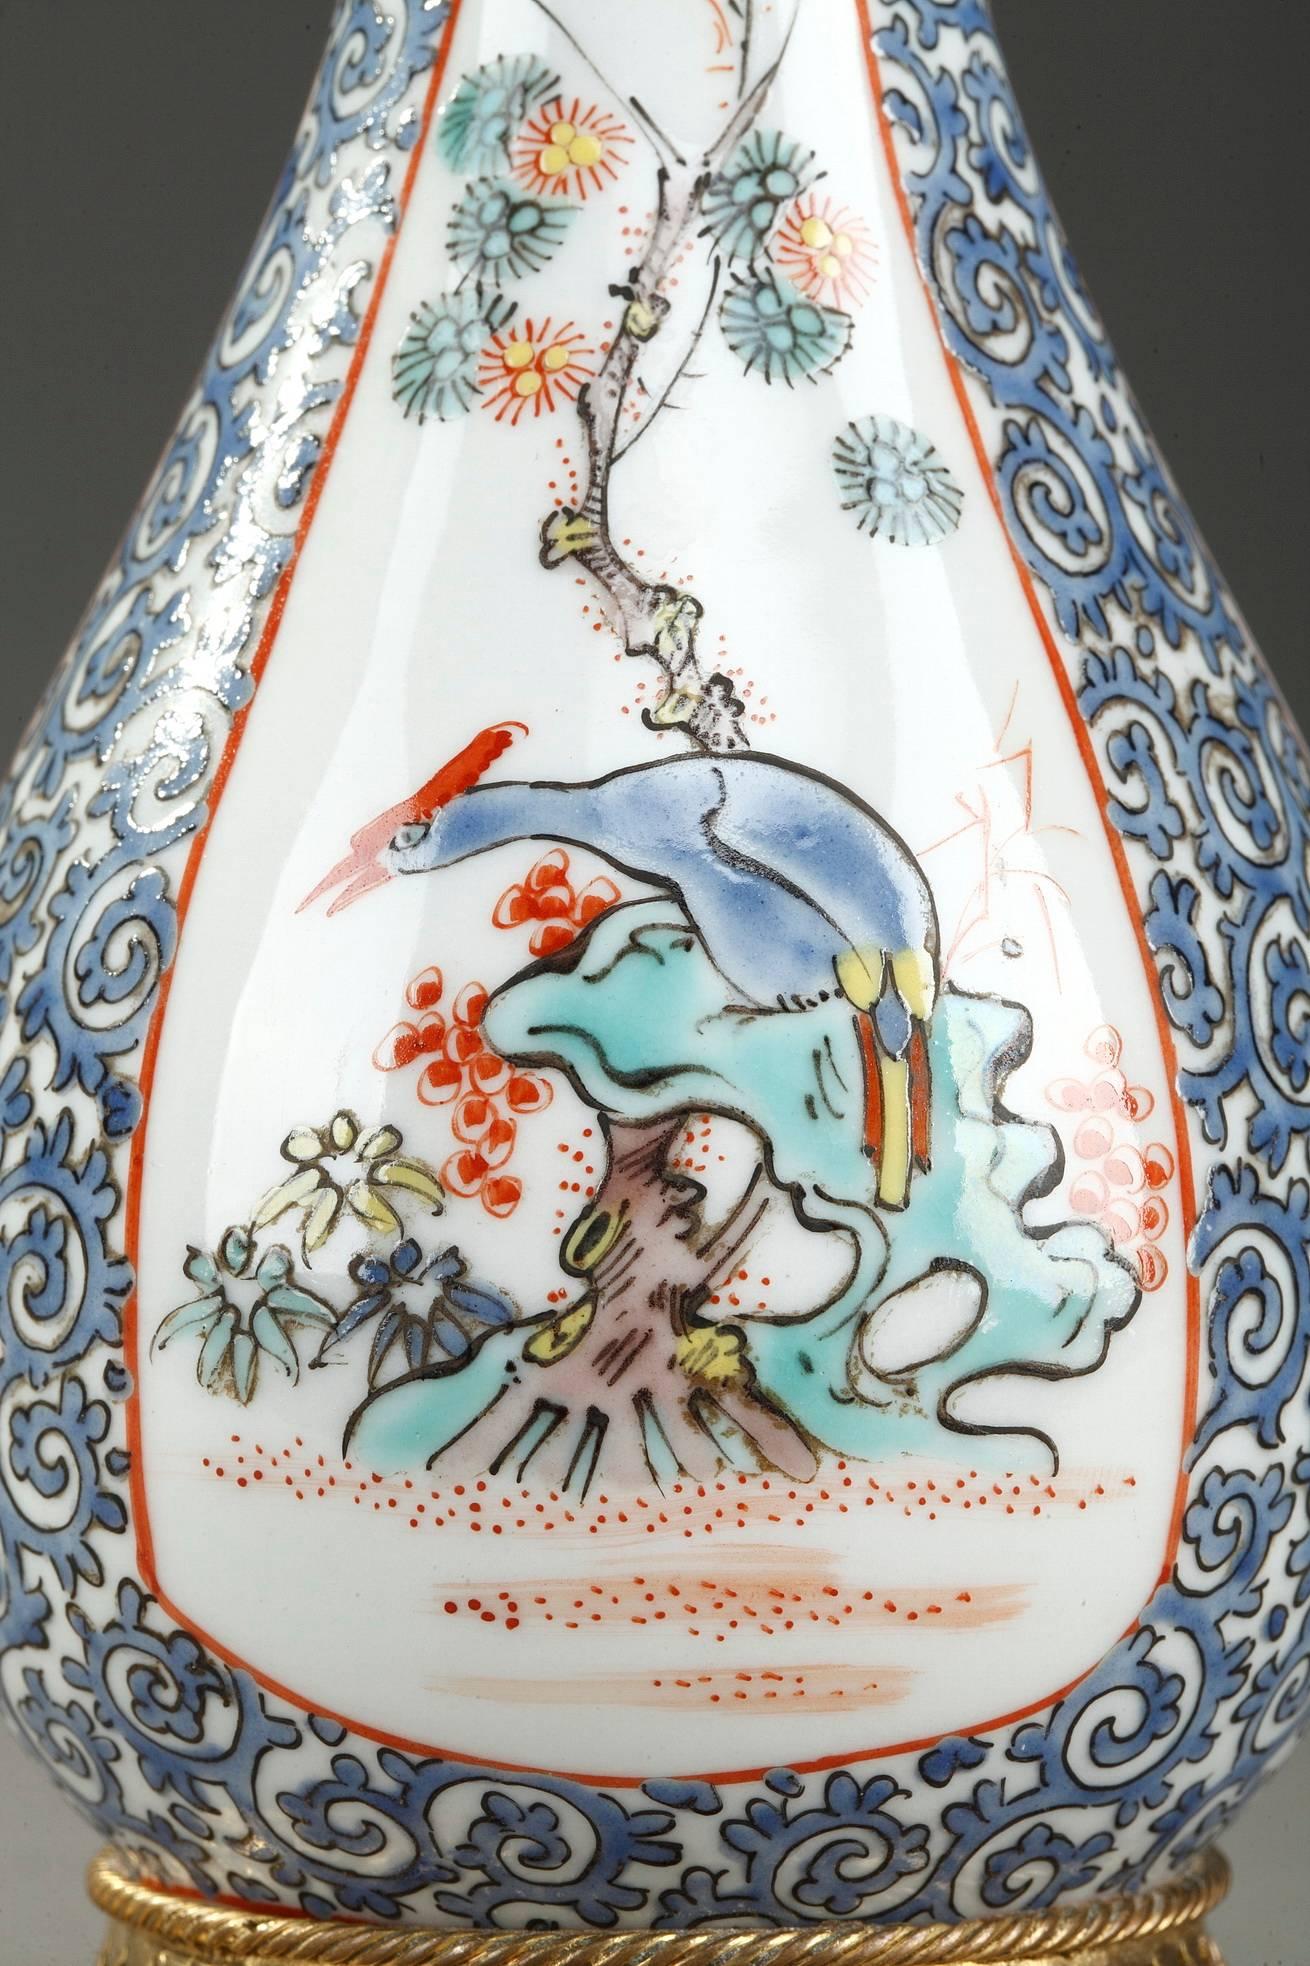 Parfümflasche und Opiumflakon aus dem späten 19. Jahrhundert aus Porzellan und mehrfarbiger Emaille, mit vergoldeten und ziselierten Bronzebeschlägen. Es zeigt ein wunderschönes Dekor im chinesischen Stil, bestehend aus Vögeln und Zweigen auf einem